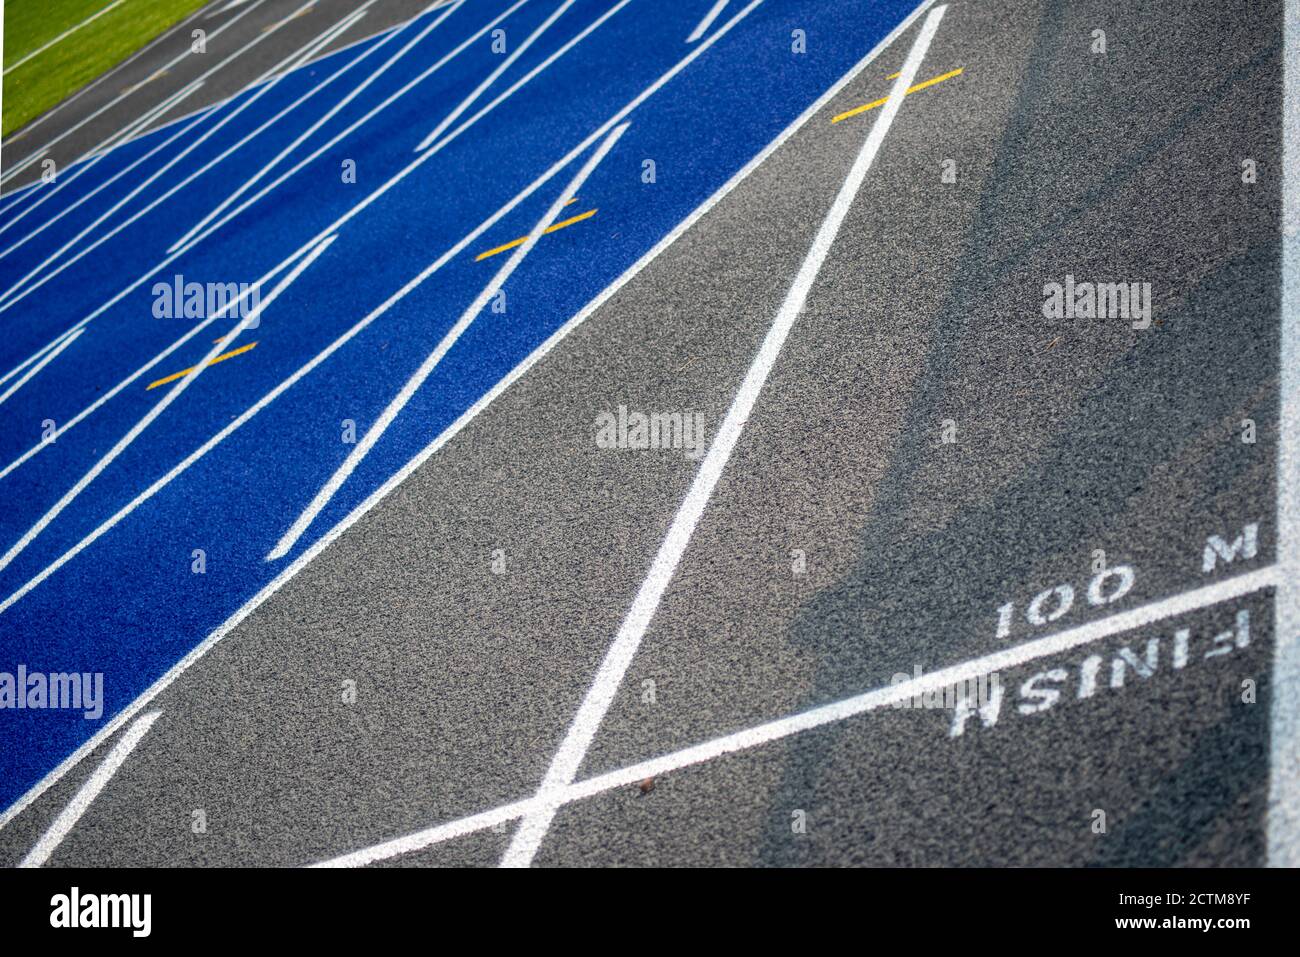 100 M Finish Line Marker auf texturierten blau und grau Laufstrecke Stockfoto